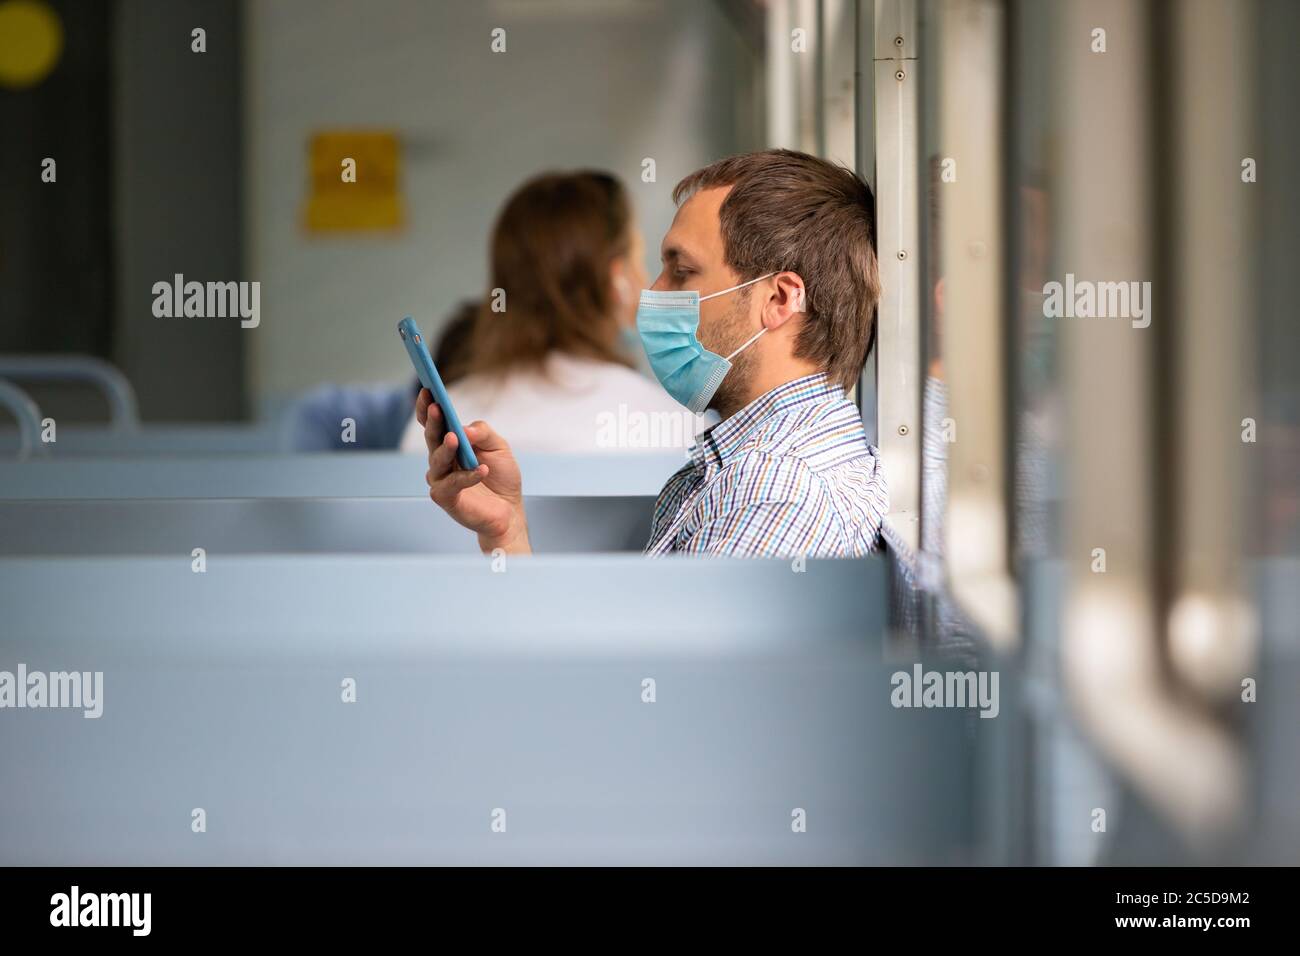 Uomo che usa smartphone, indossa una maschera protettiva in treno per proteggere il sistema respiratorio da infezione da coronavirus, covid-19. Misura preventiva. Nuovo Foto Stock